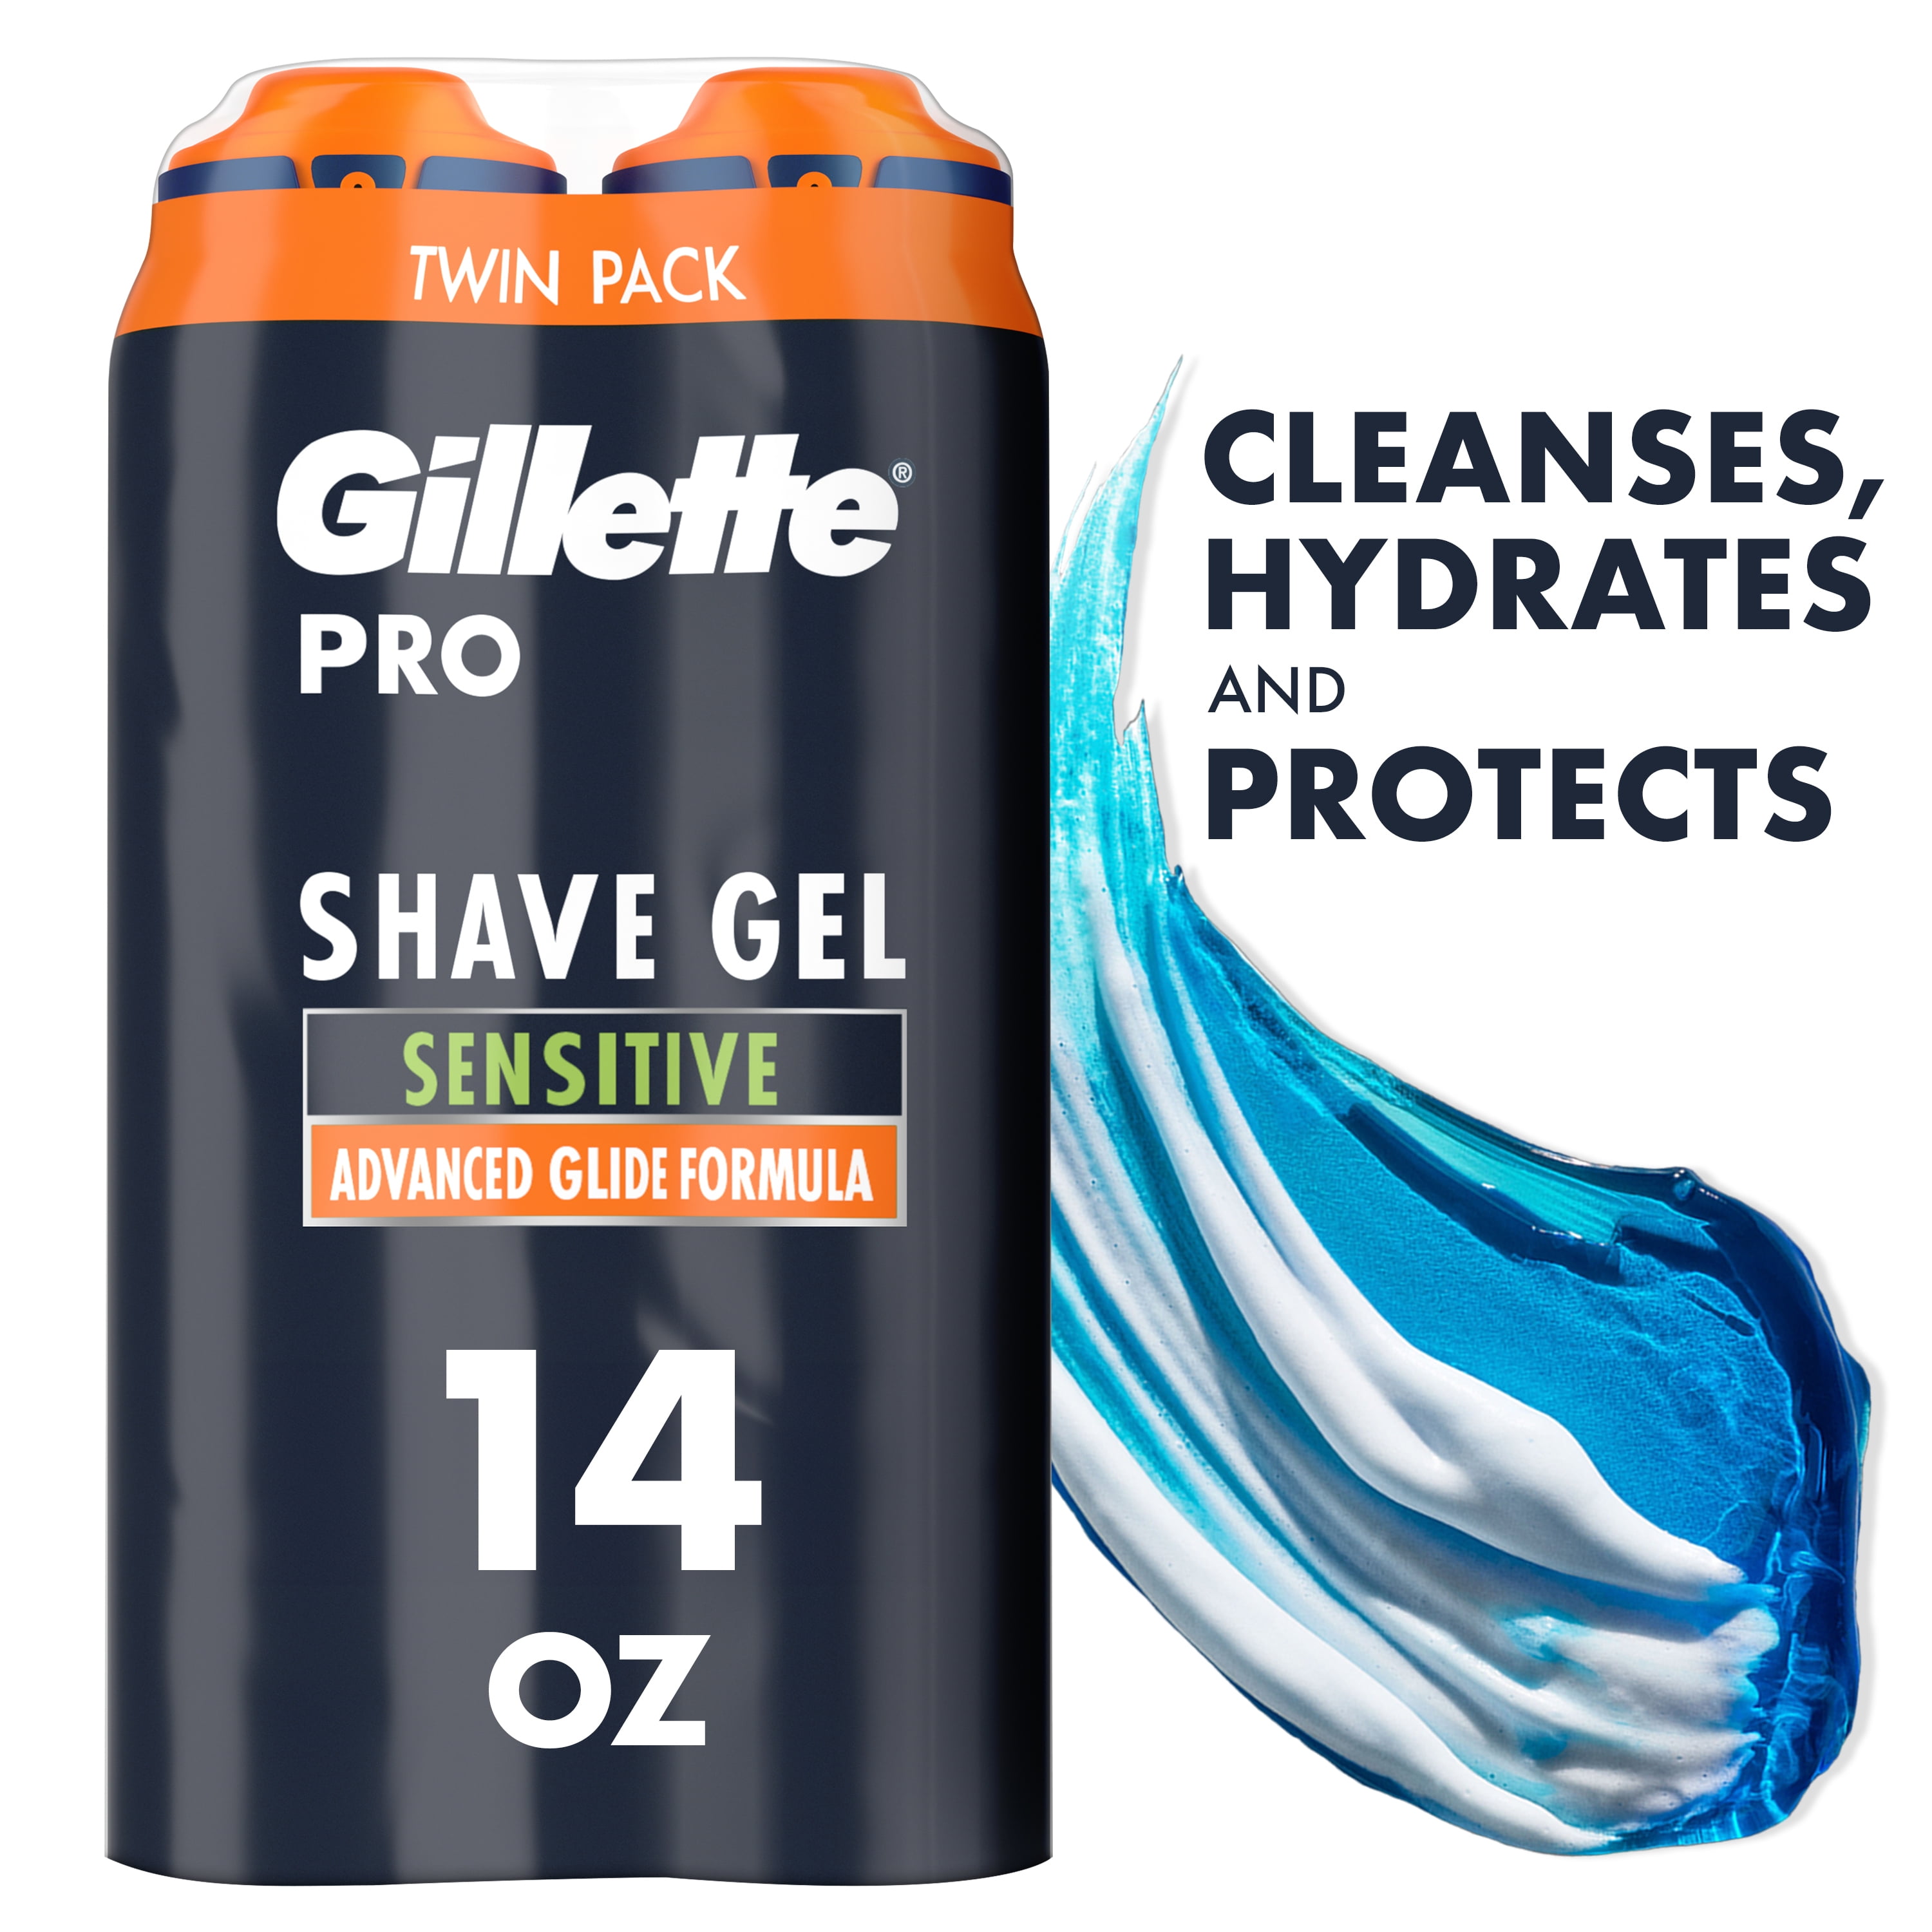 Gillette PRO Rapid Shaving Gel